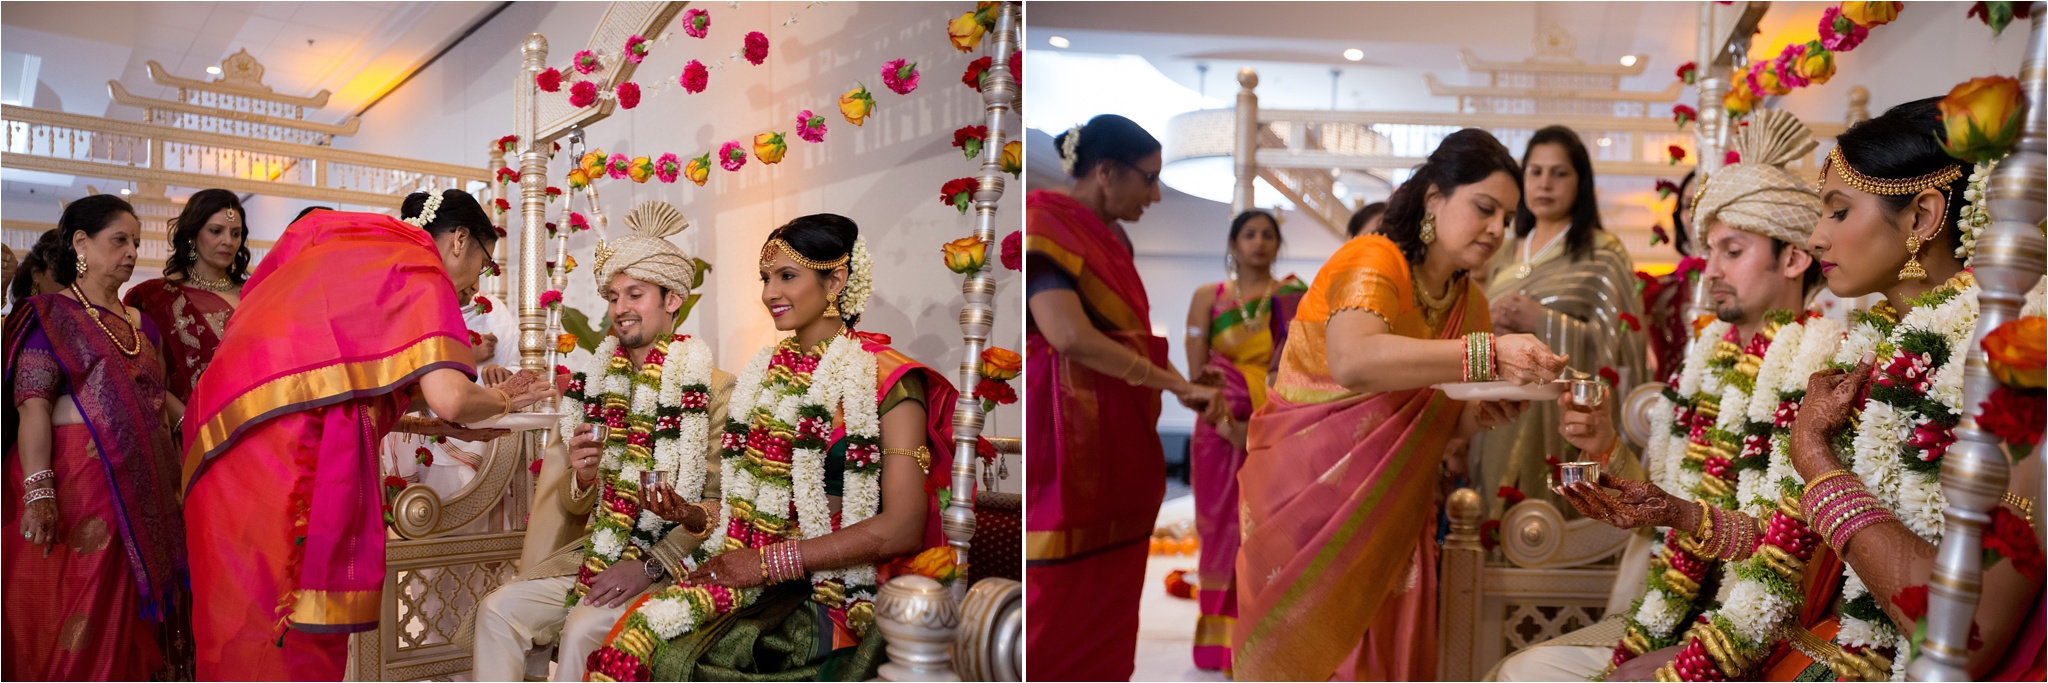 Santa_Clara_Marriott_Indian_Wedding_0021.jpg